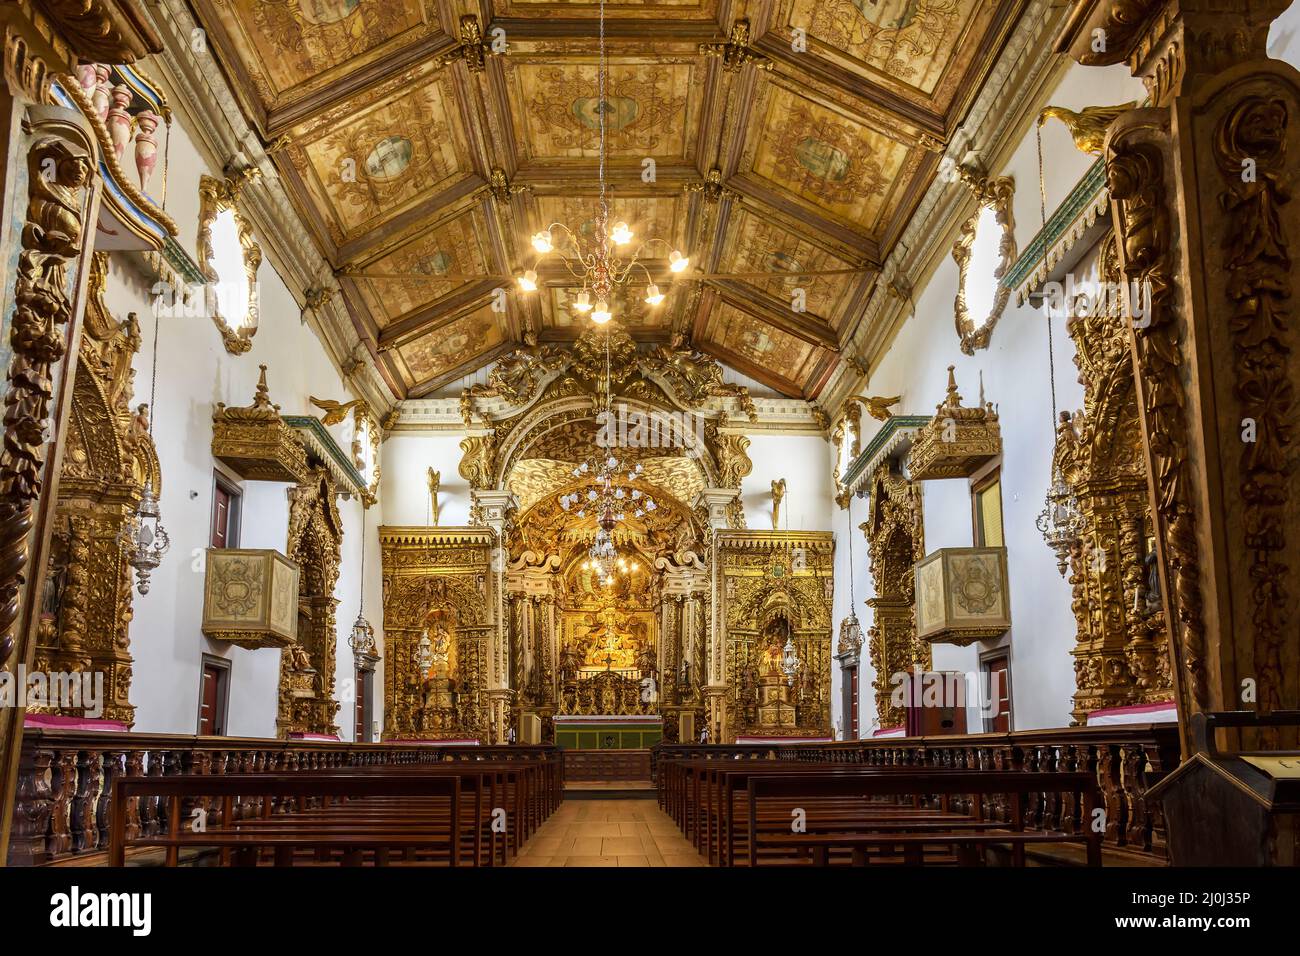 Lujoso interior y altar de una iglesia histórica brasileña del siglo 18th en arquitectura barroca Foto de stock